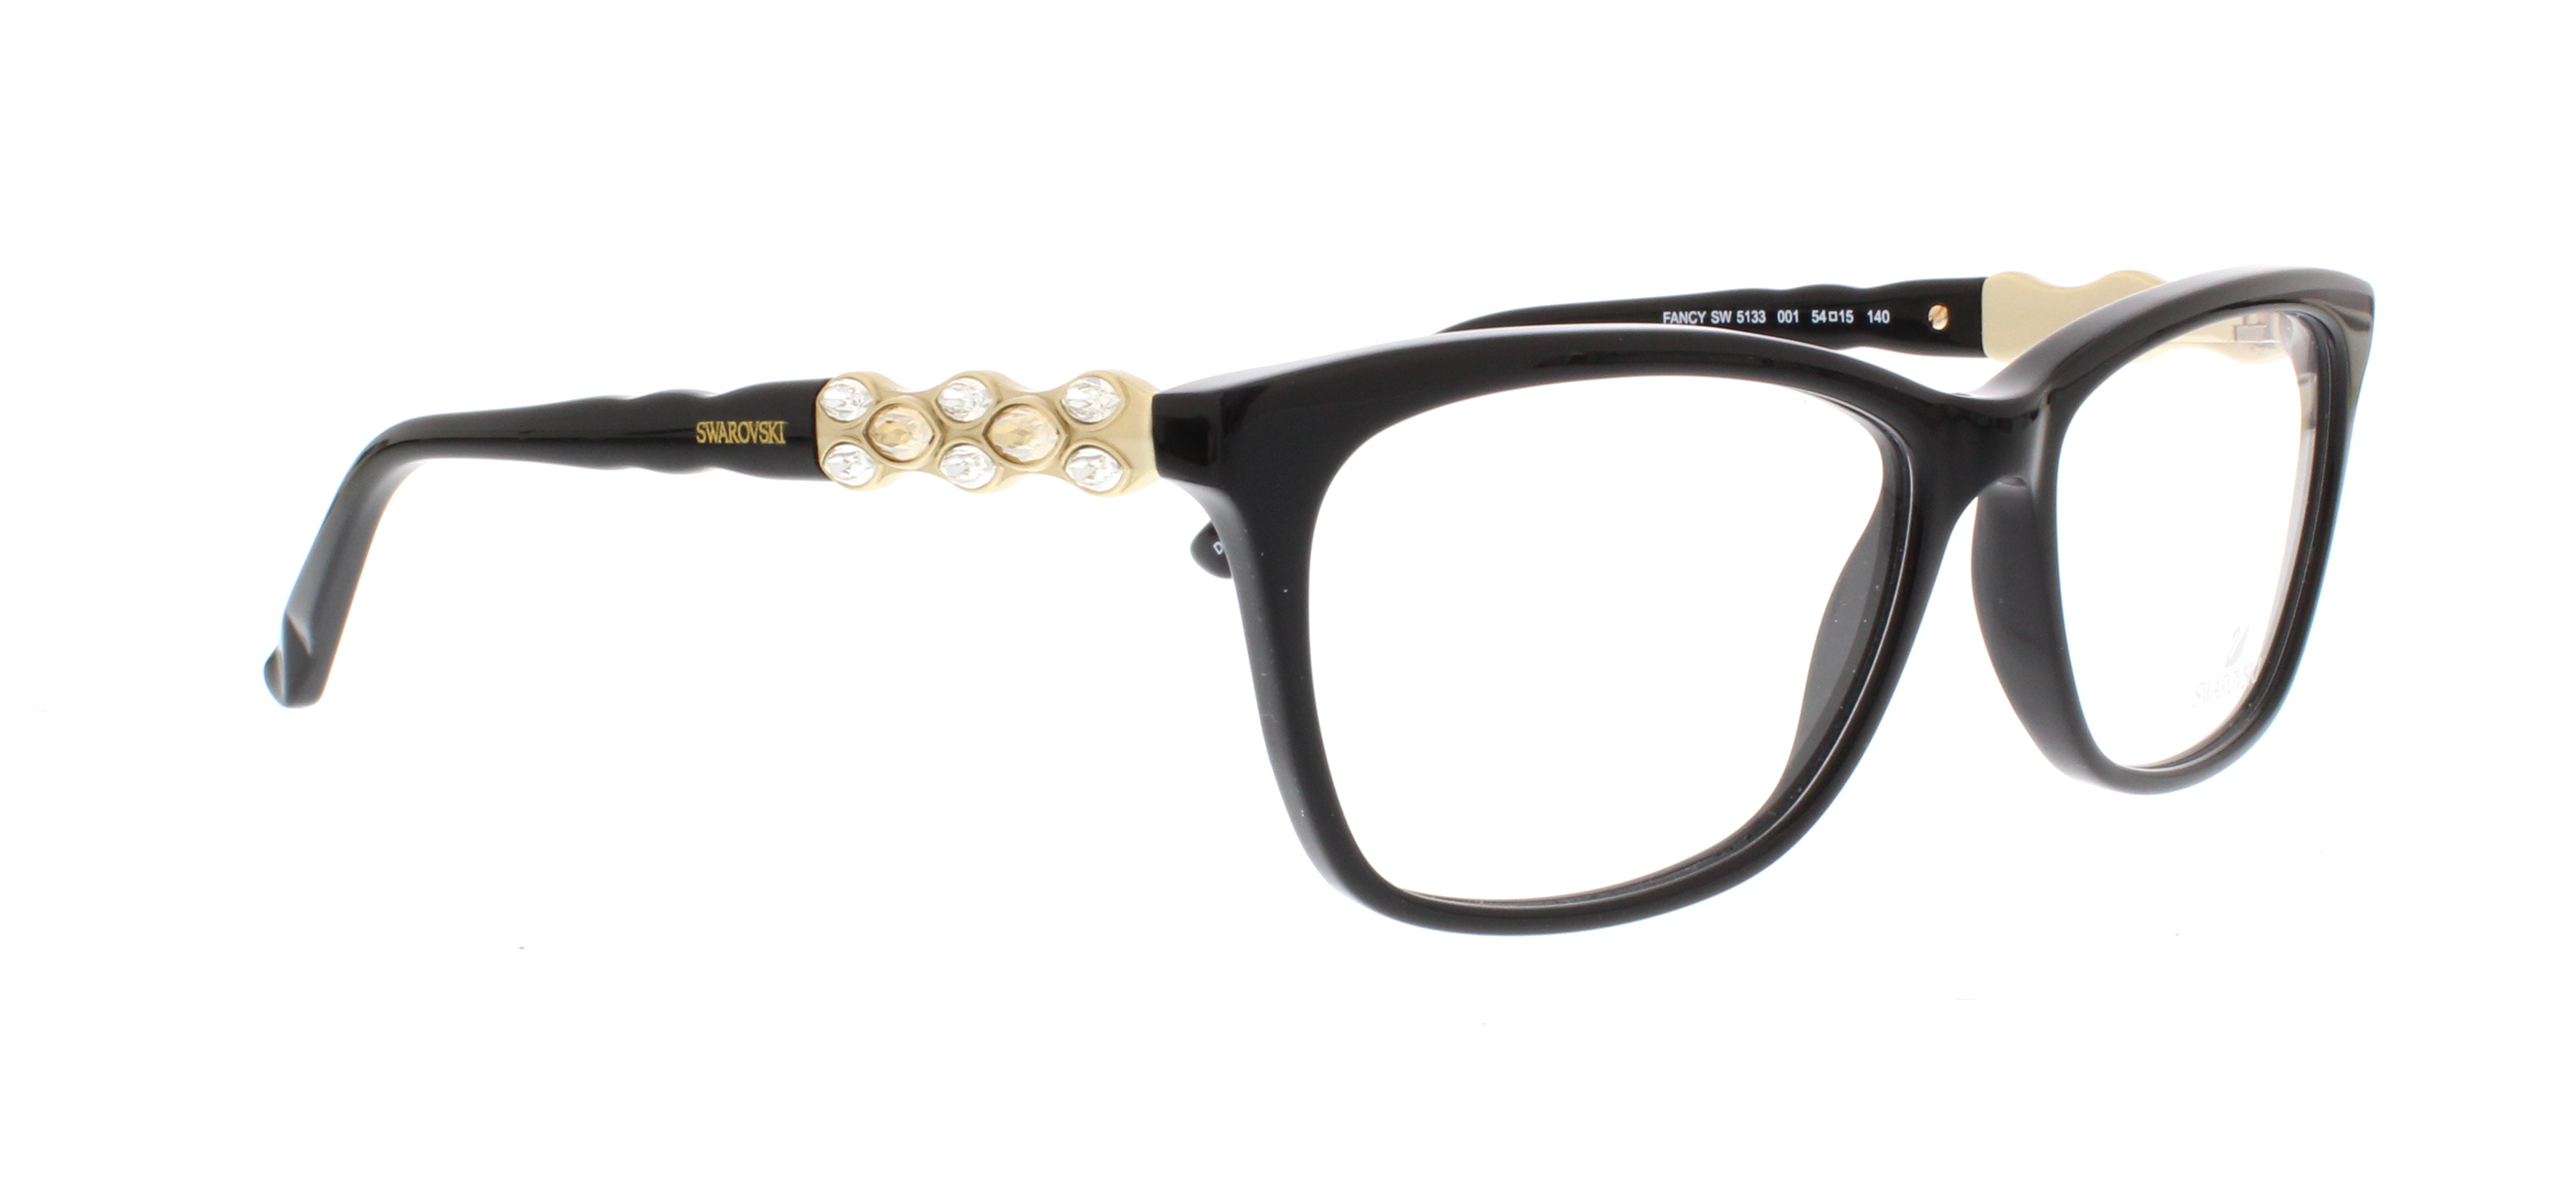 Designer Frames Outlet. Swarovski Eyeglasses SK5133 Fancy